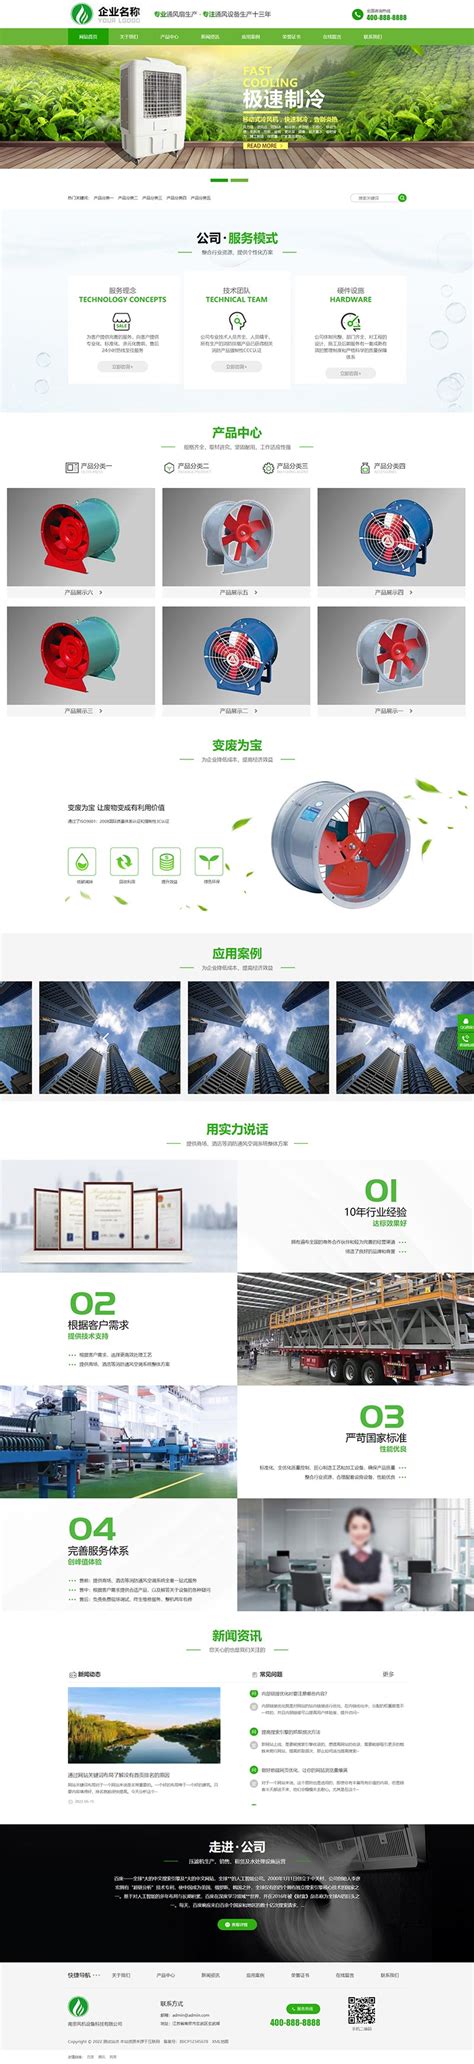 响应式绿色大气环保机风机机械设备电网站WordPress模板 _ WP模板阁